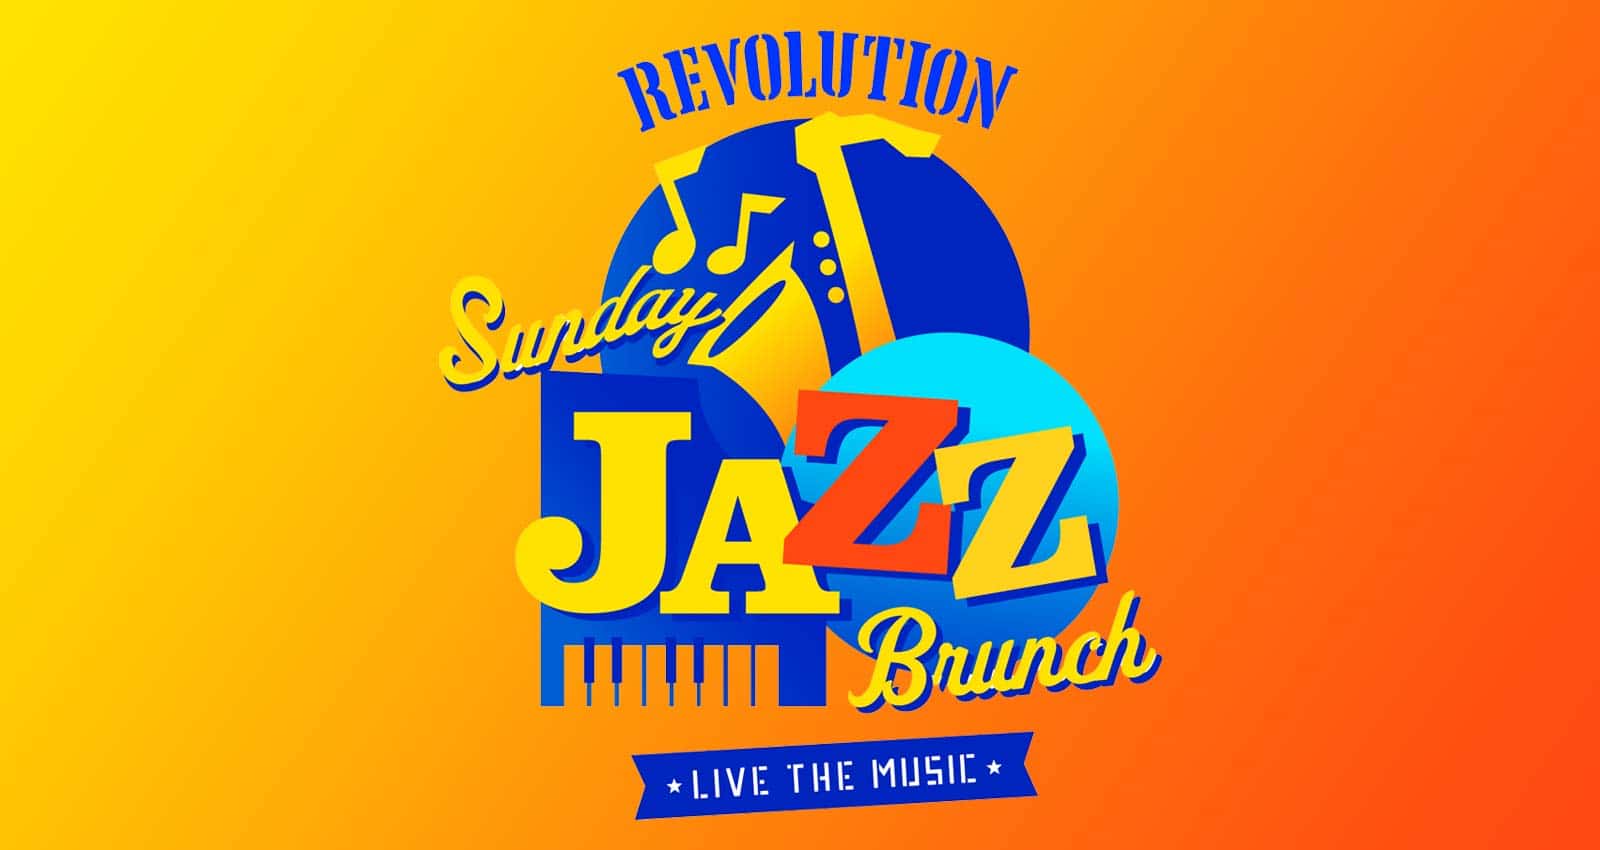 Riverwalk Fort Lauderdale - Sunday Jazz Brunch